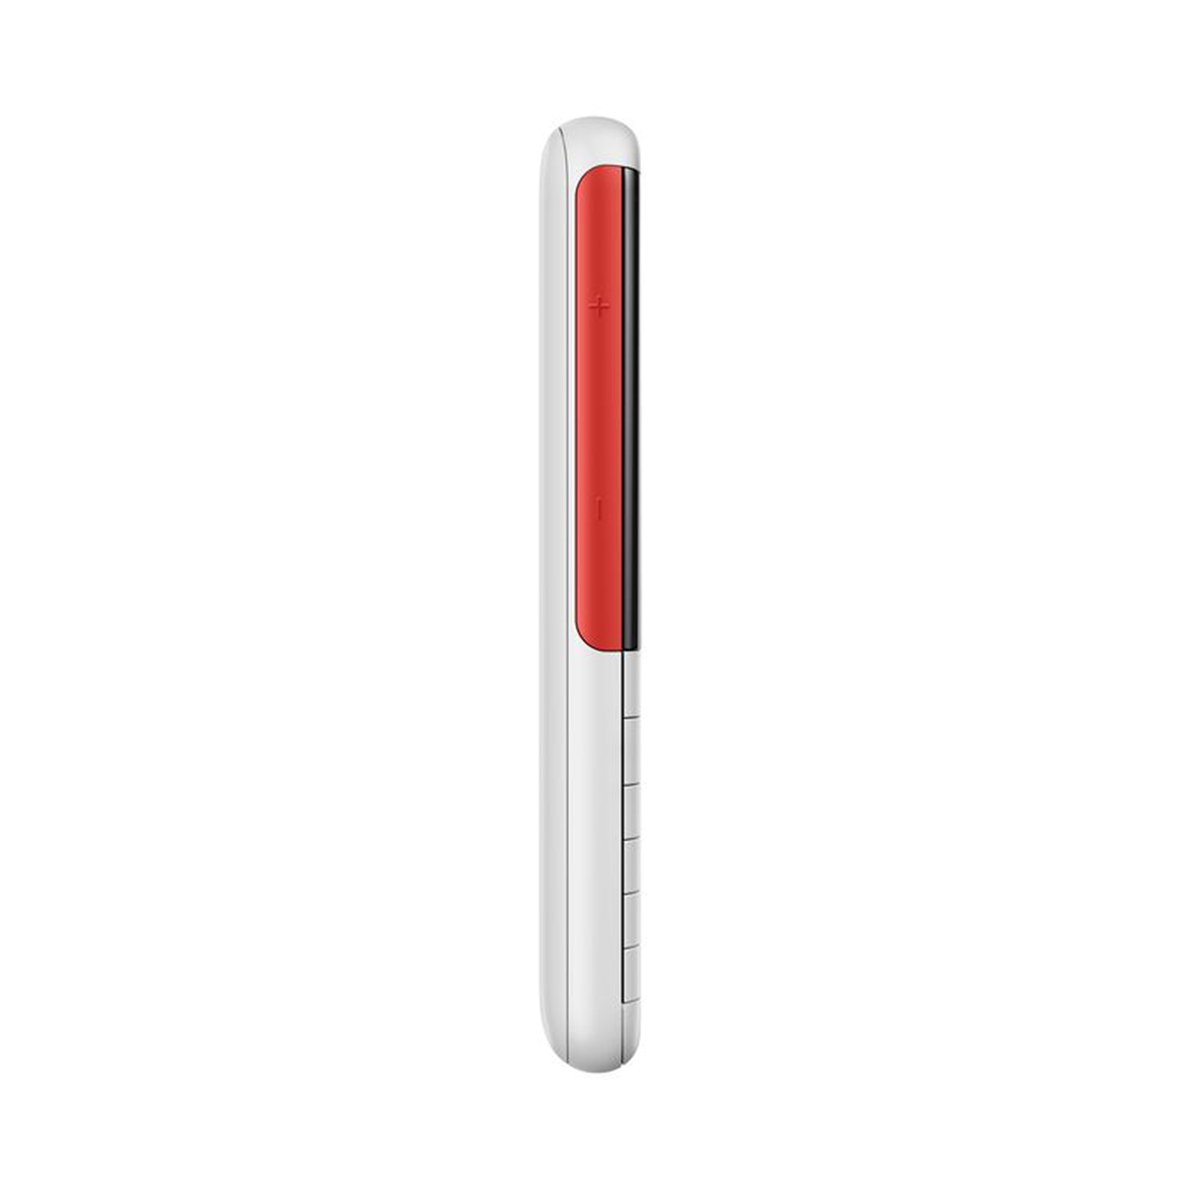 Nokia 5310 White/Red